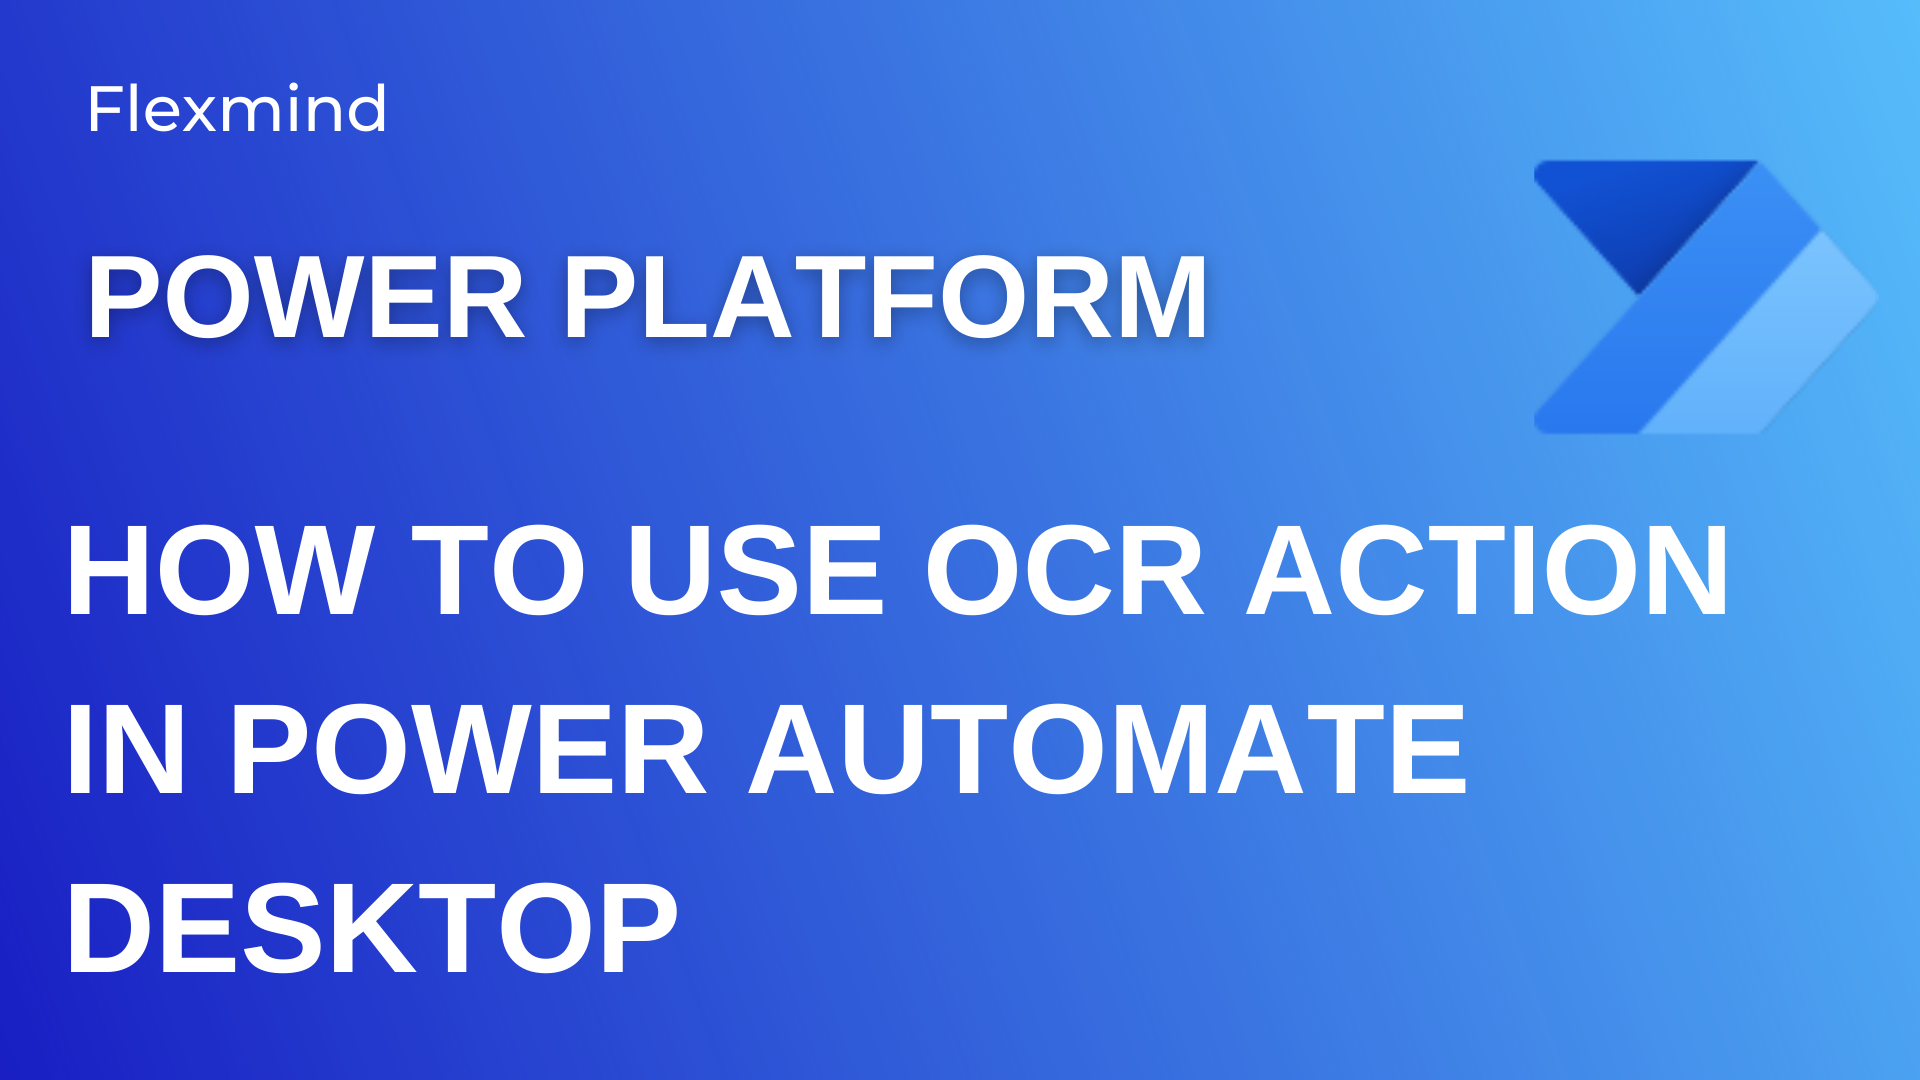 OCR in Power Automate Desktop